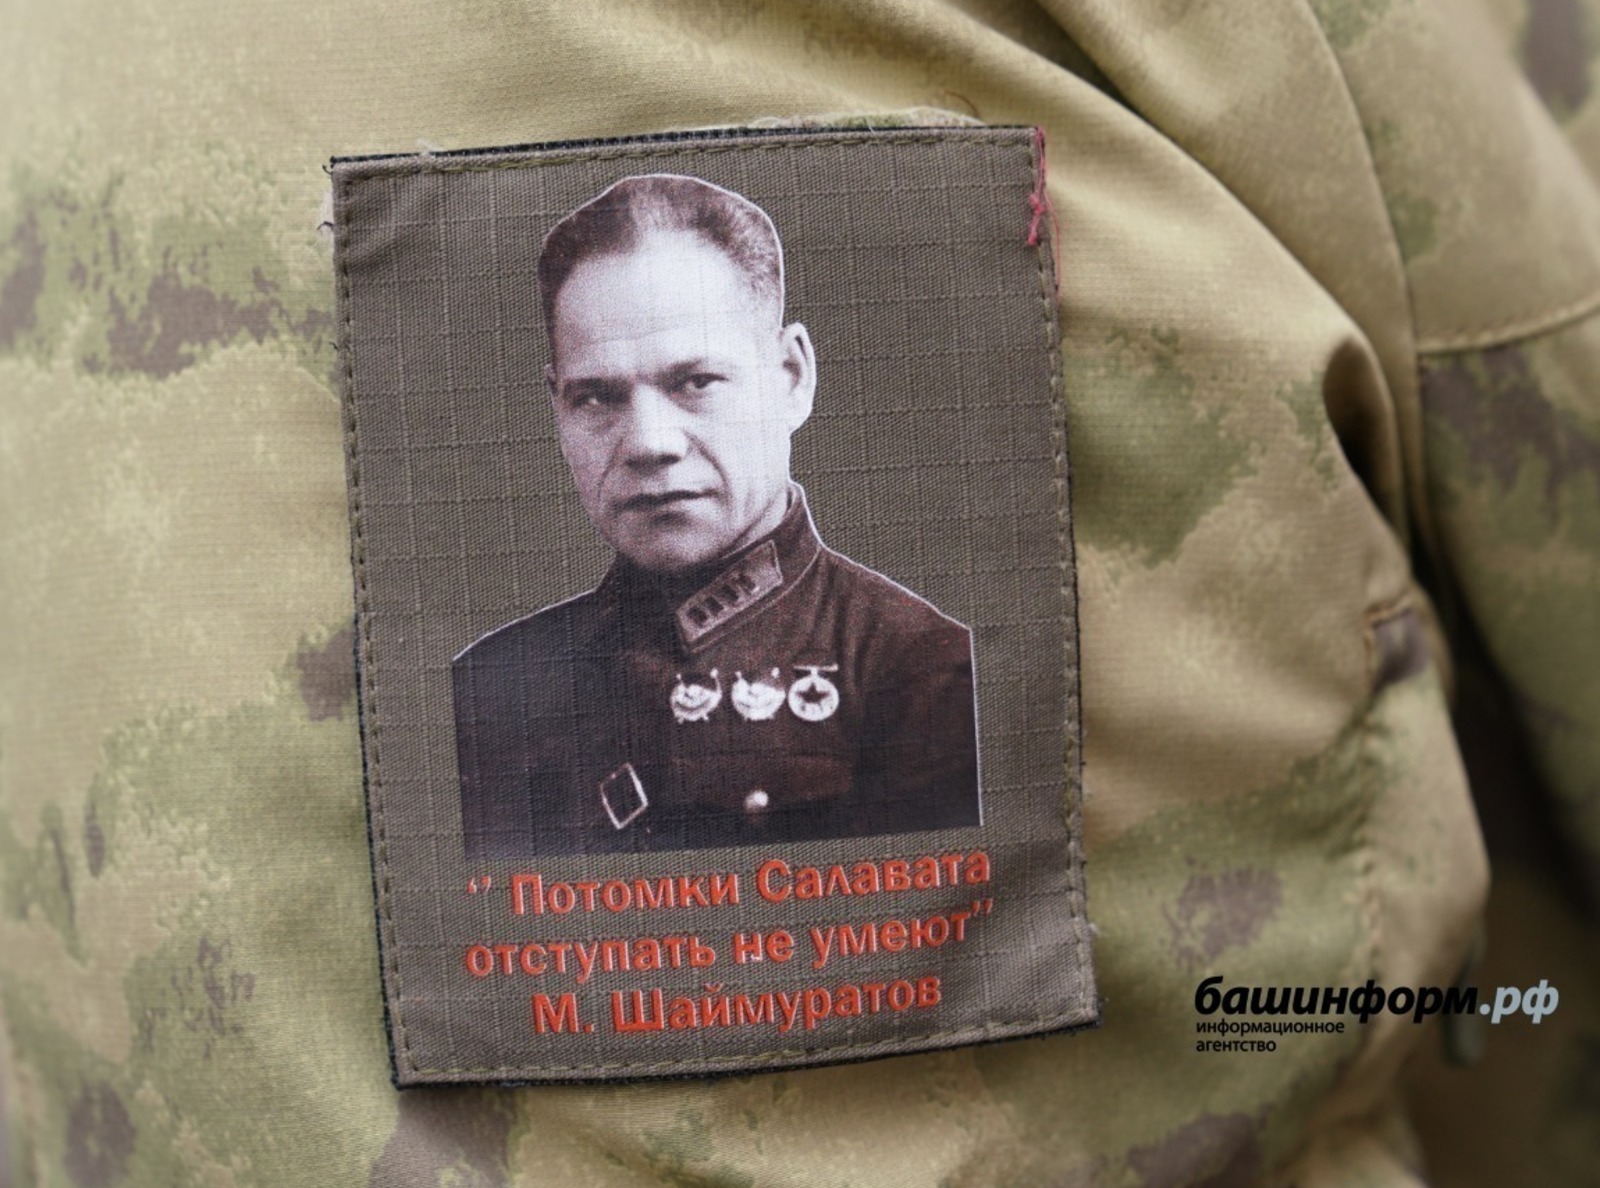 Песня «Шаймуратов-генерал» символизирует героизм воинов из Башкирии в зоне СВО